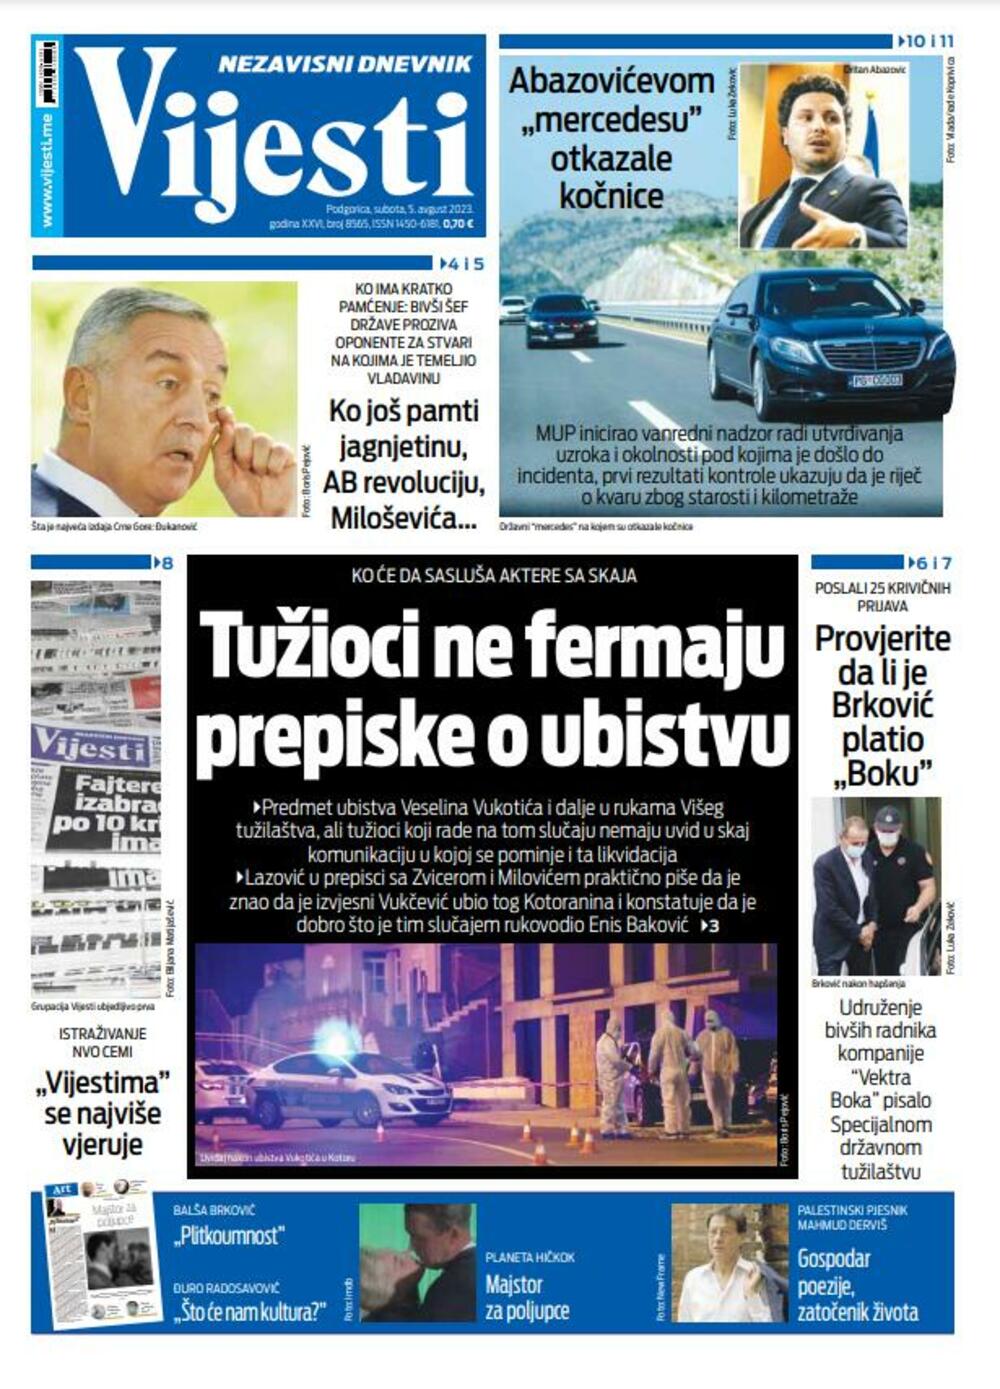 Naslovna strana "Vijesti" za 5. avgust 2023. godine, Foto: Vijesti